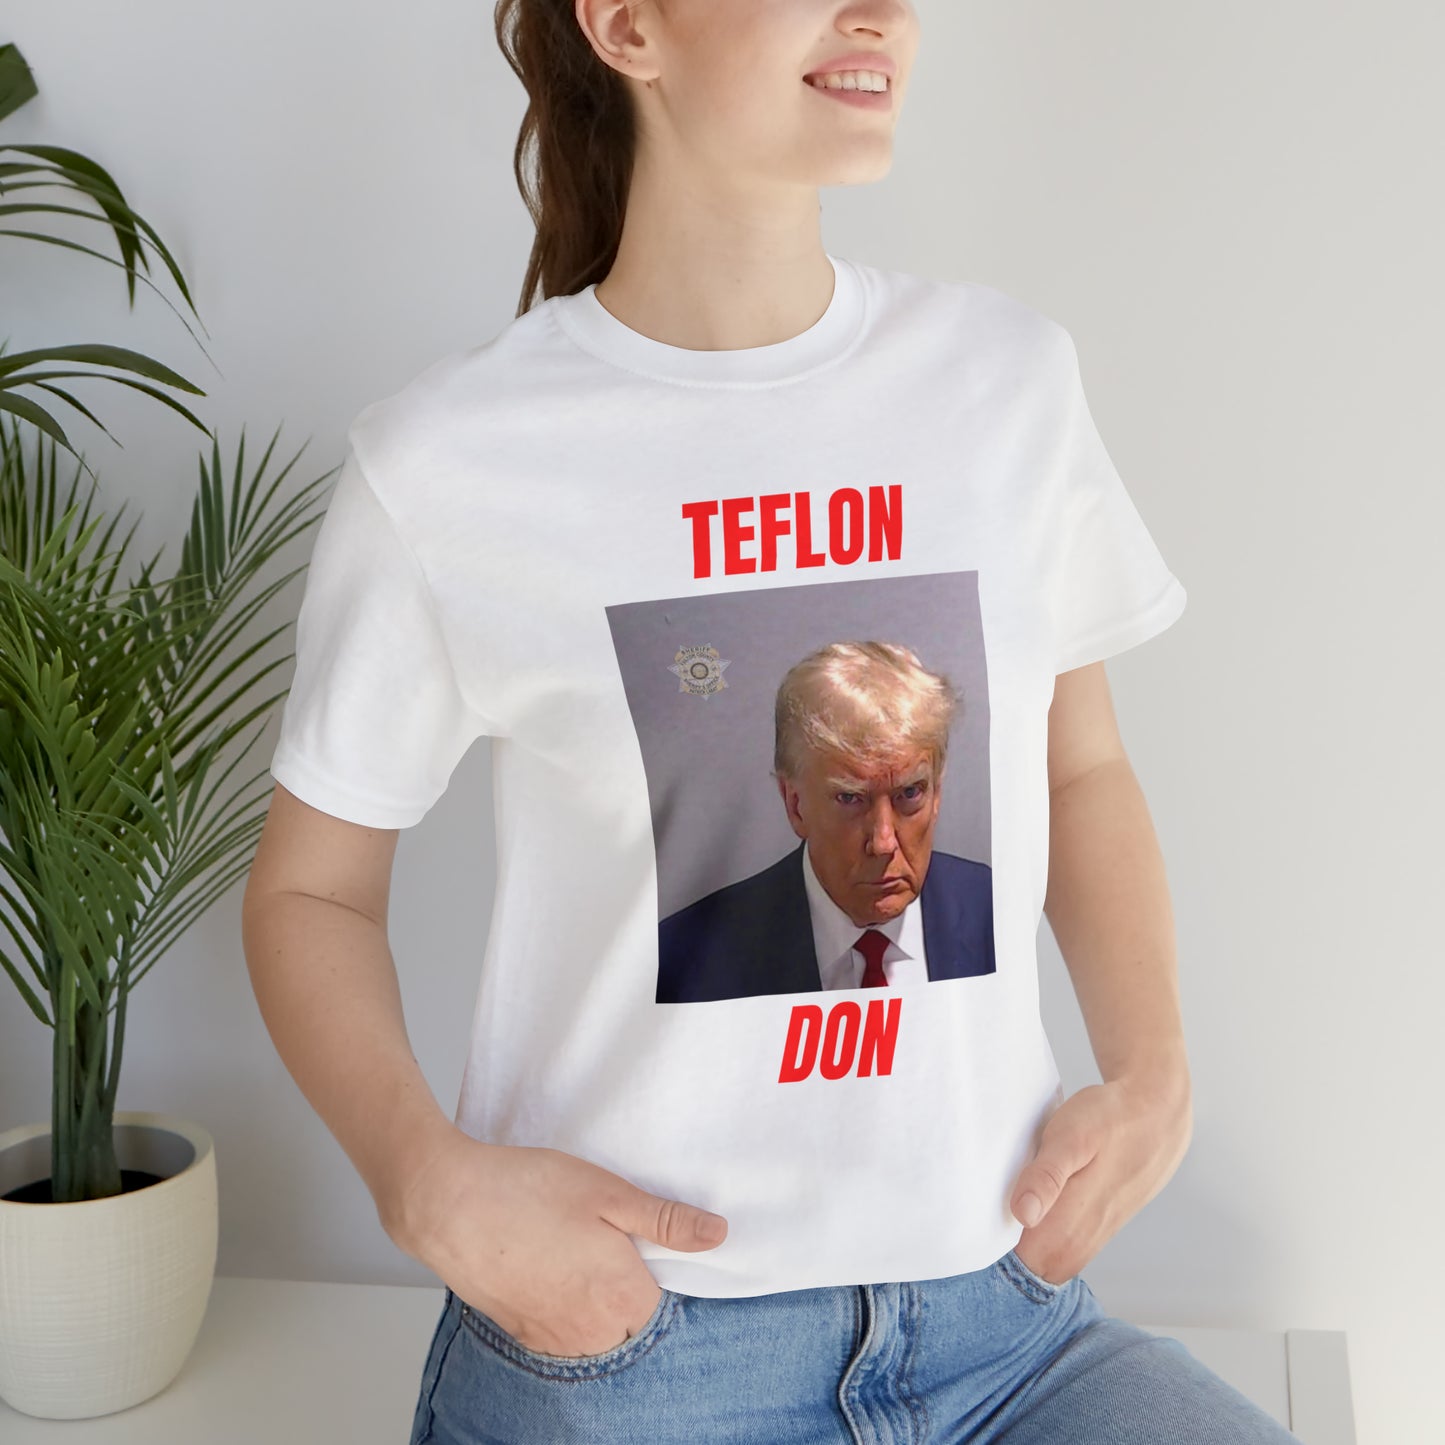 TEFLON DON TEE